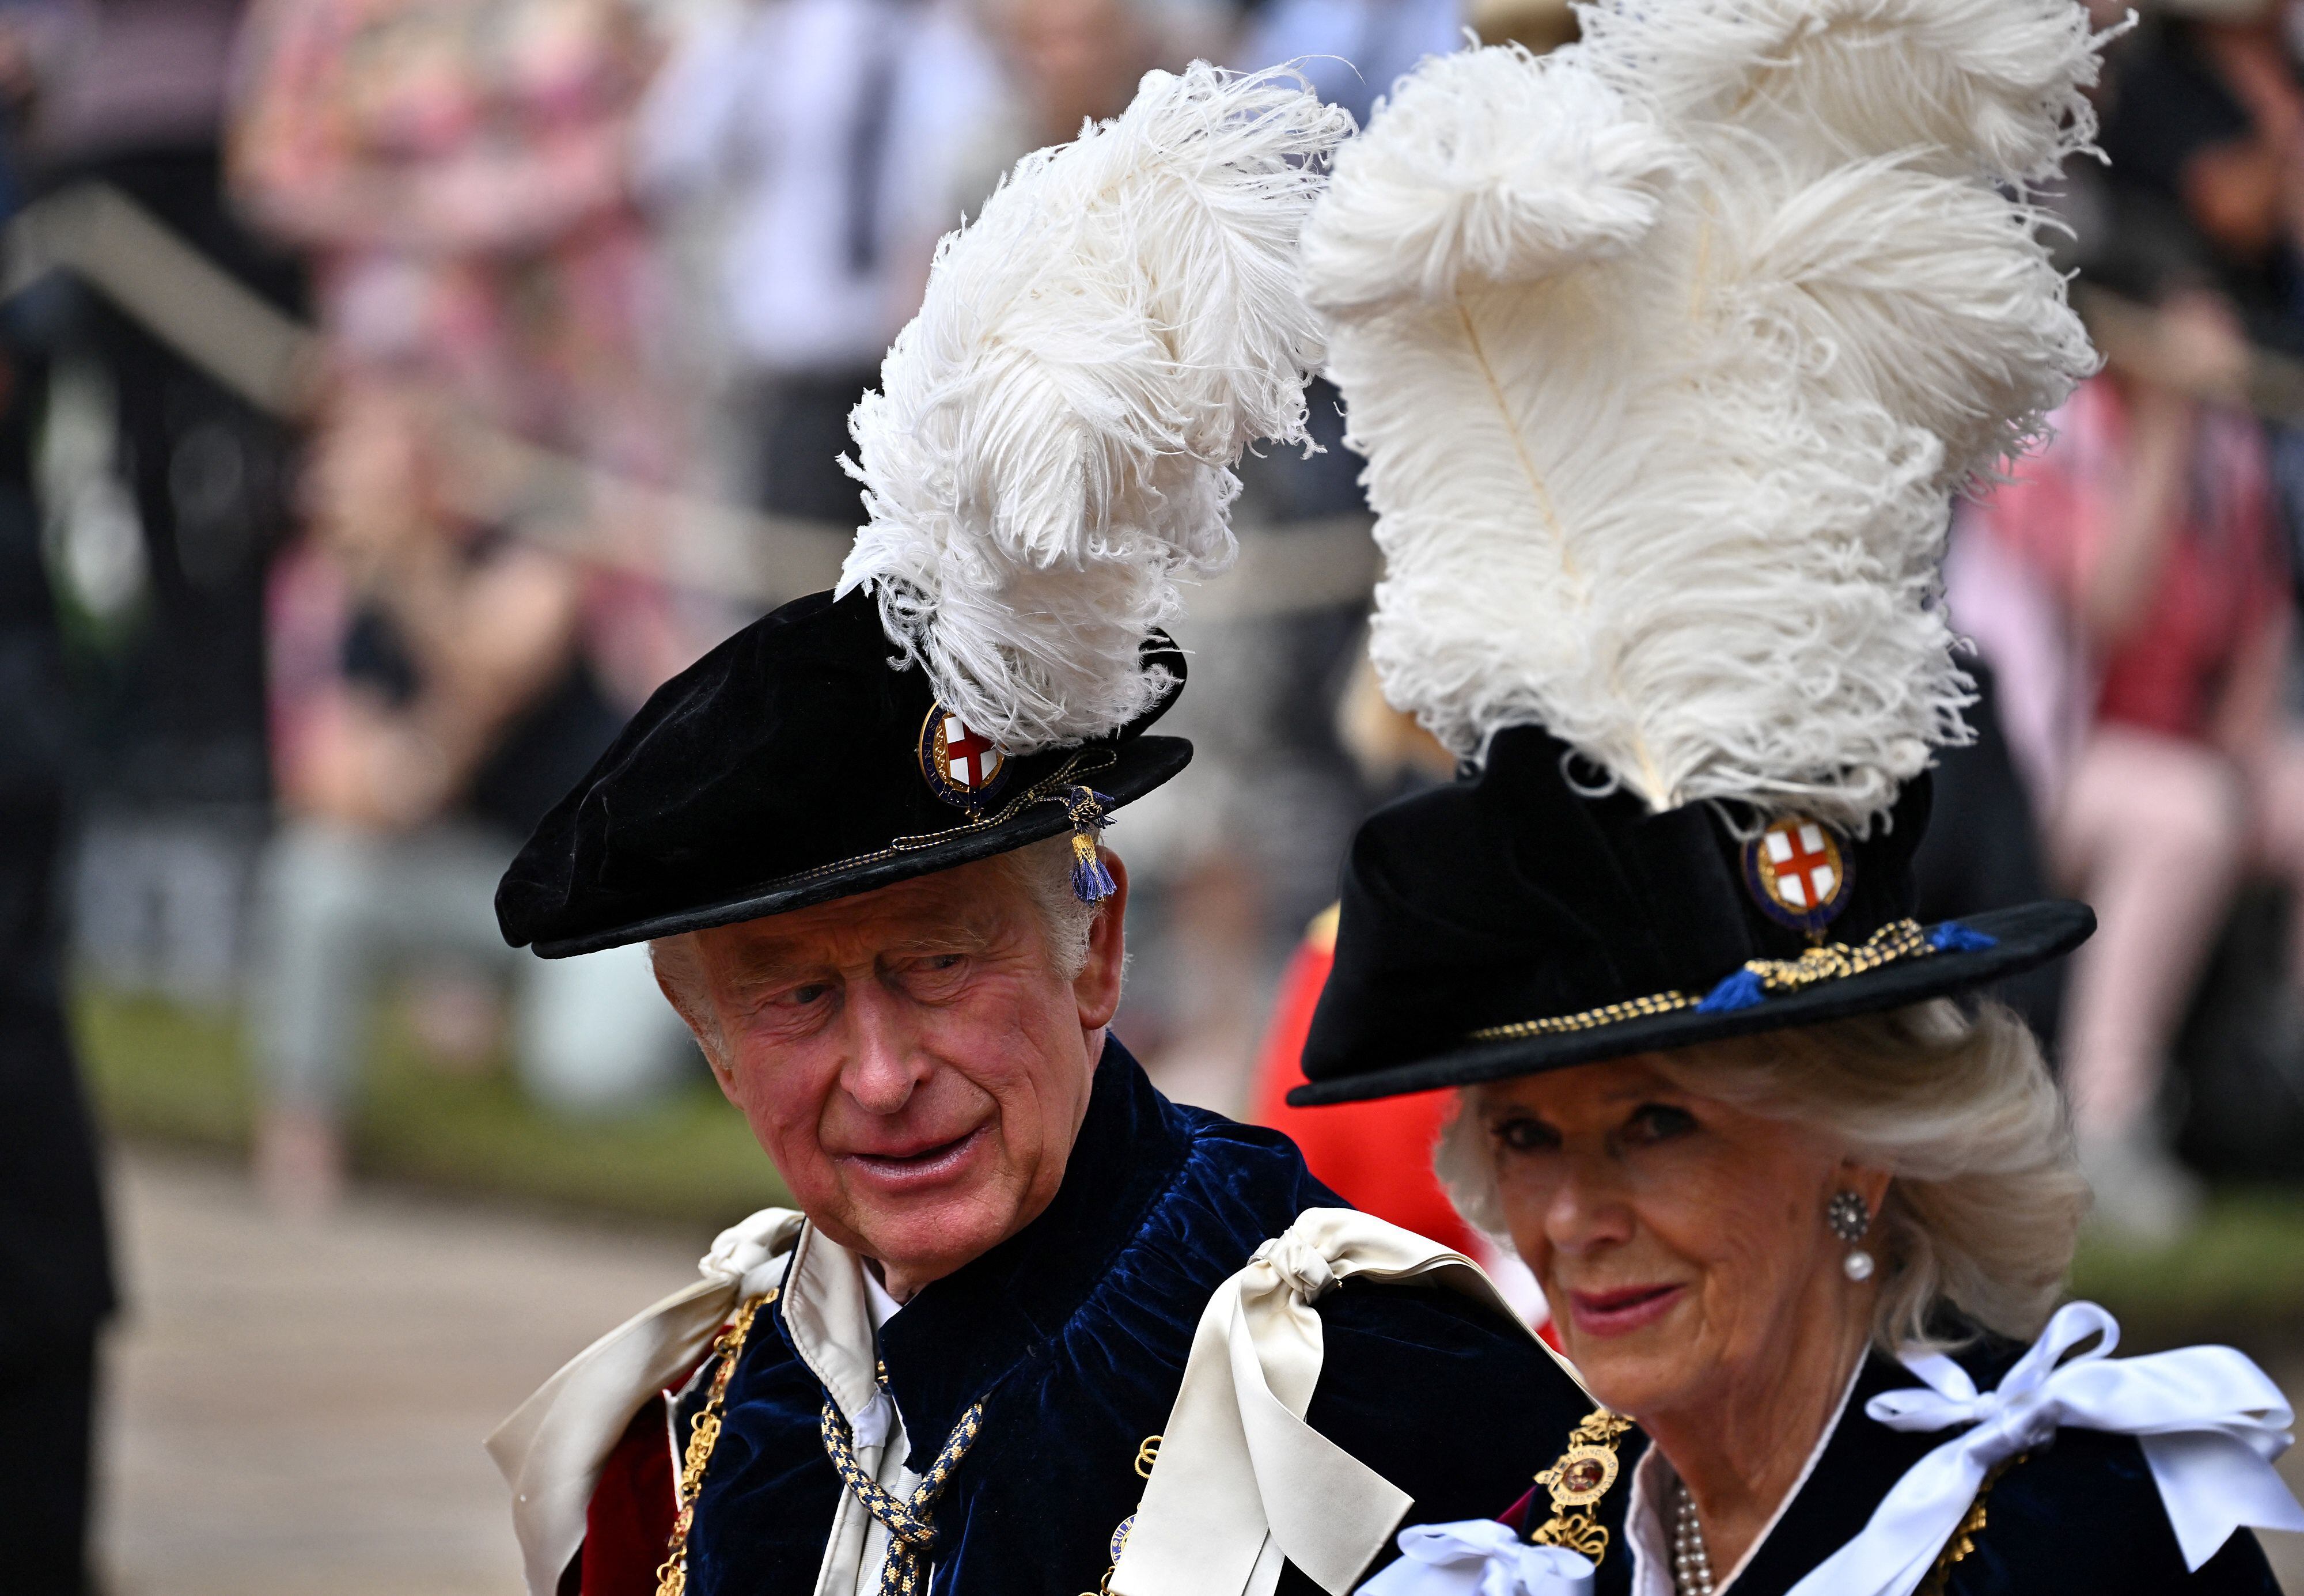 El Príncipe Carlos, el Príncipe de Gales (L) de Gran Bretaña y la Duquesa de Cornualles Camilla de Gran Bretaña llegan a la Capilla de San Jorge para asistir a la Ceremonia de la Más Noble Orden de la Jarretera en el Castillo de Windsor en Windsor, al oeste de Londres el 13 de junio de 2022. (Foto de Ben Stansall / PISCINA / AFP)